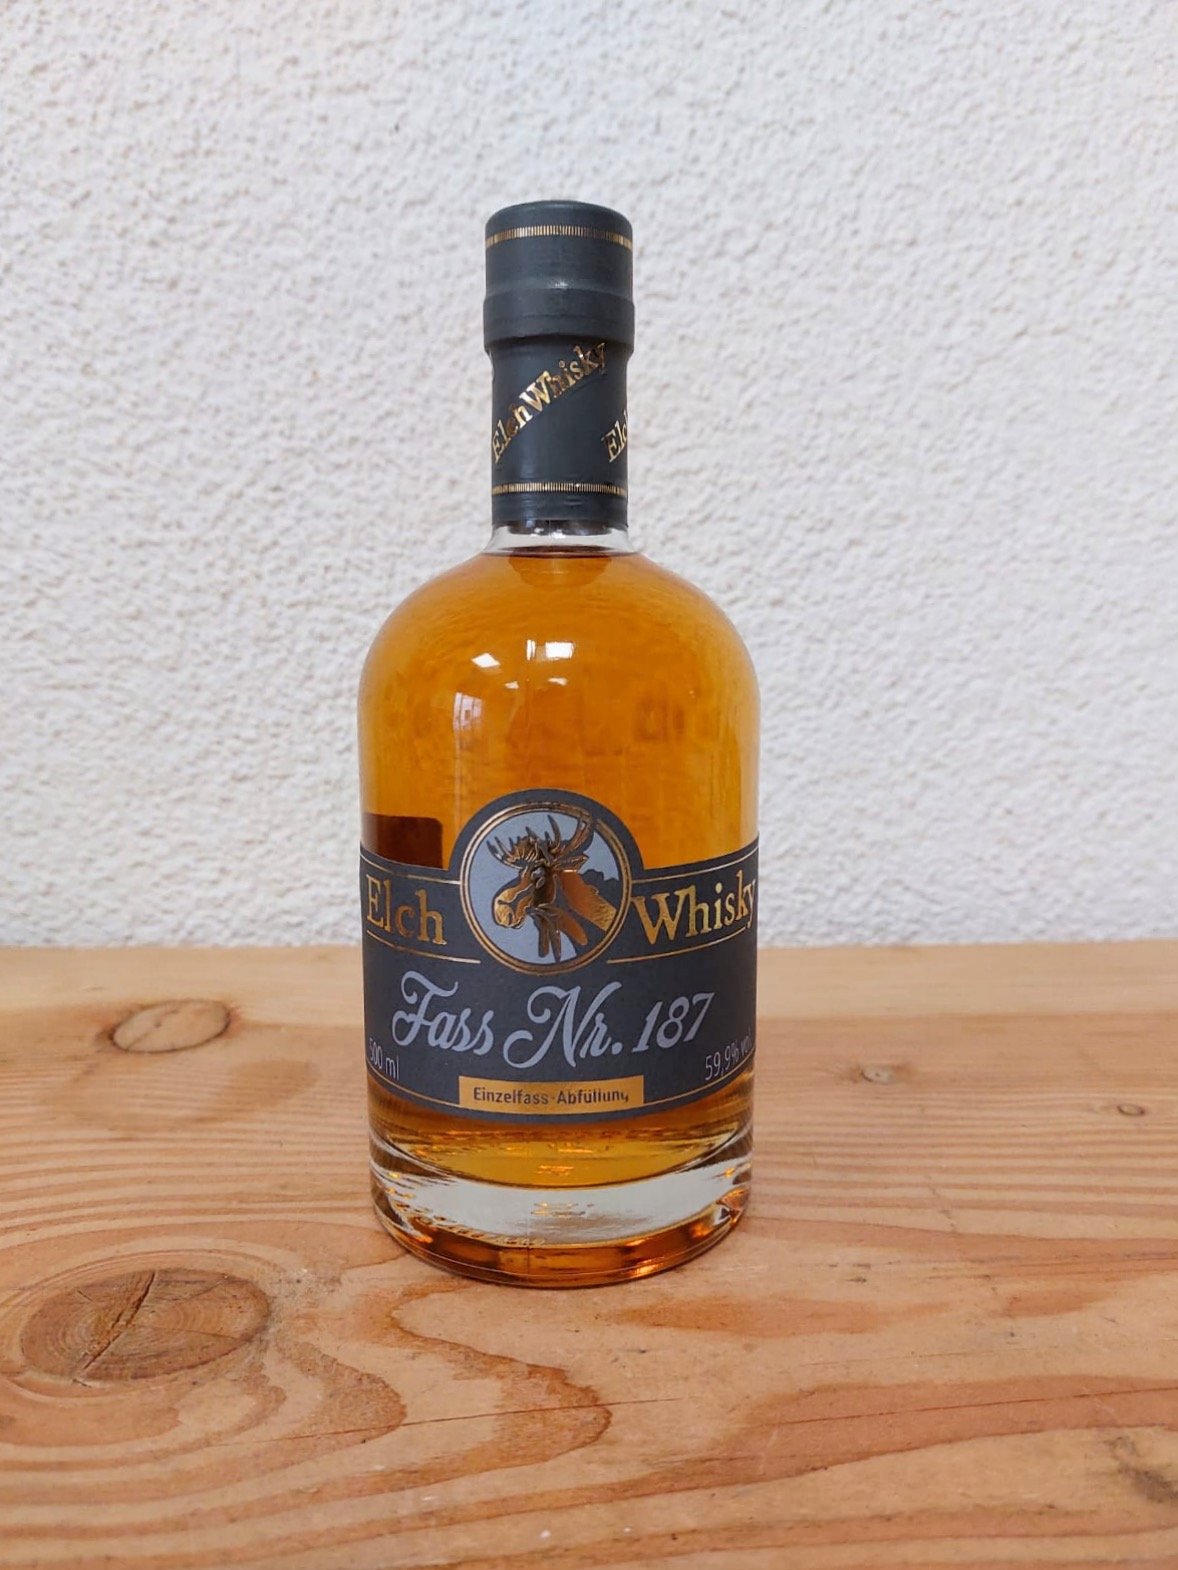 Elch Whisky Fass Nr. 187 Aprikosen Brandy Finish